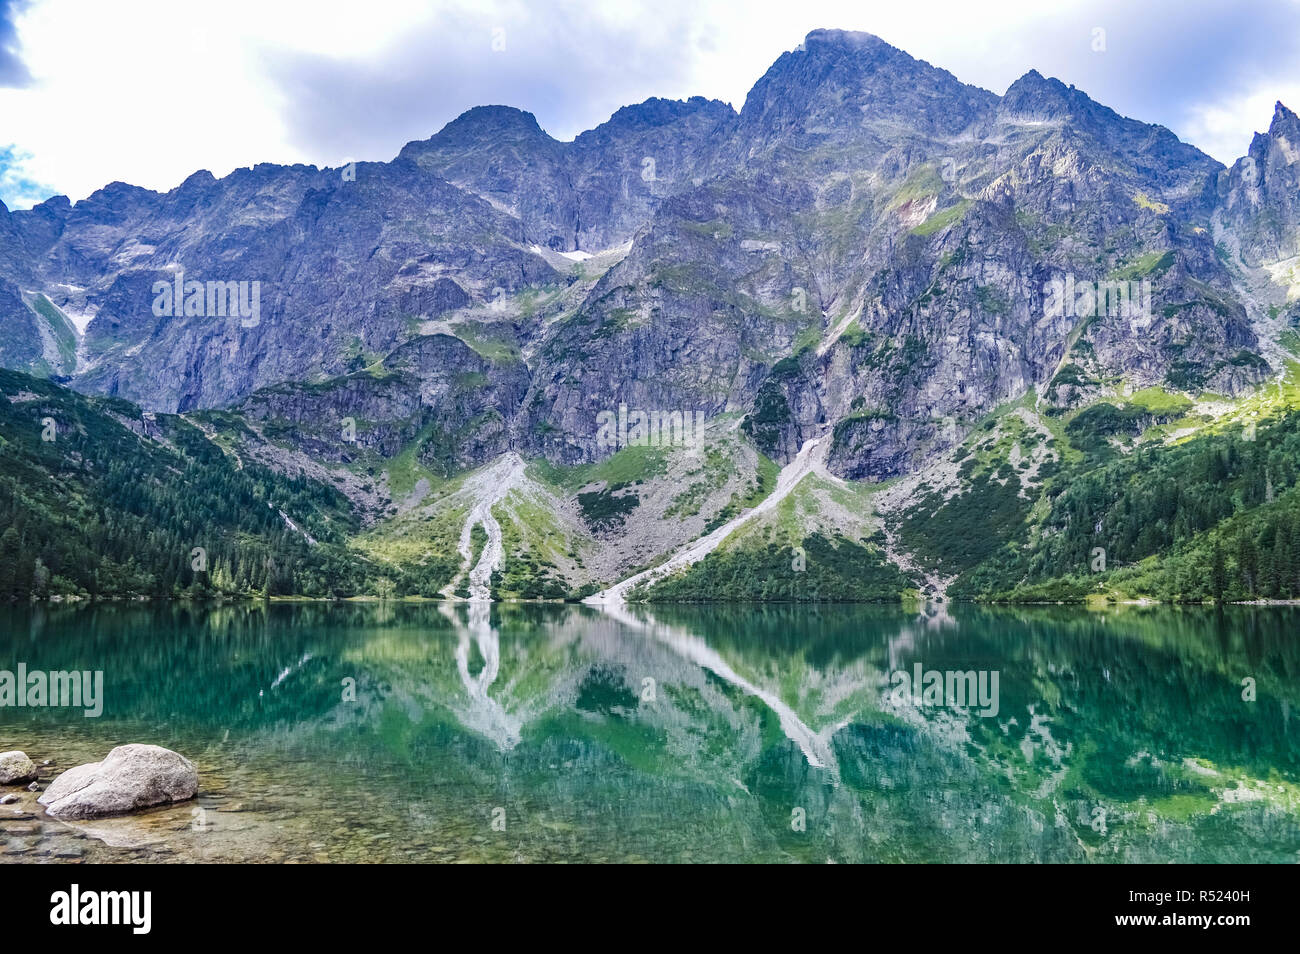 Le très beau lac de Morskie Oko dans les Tatras, près de Zakopane, Pologne Banque D'Images